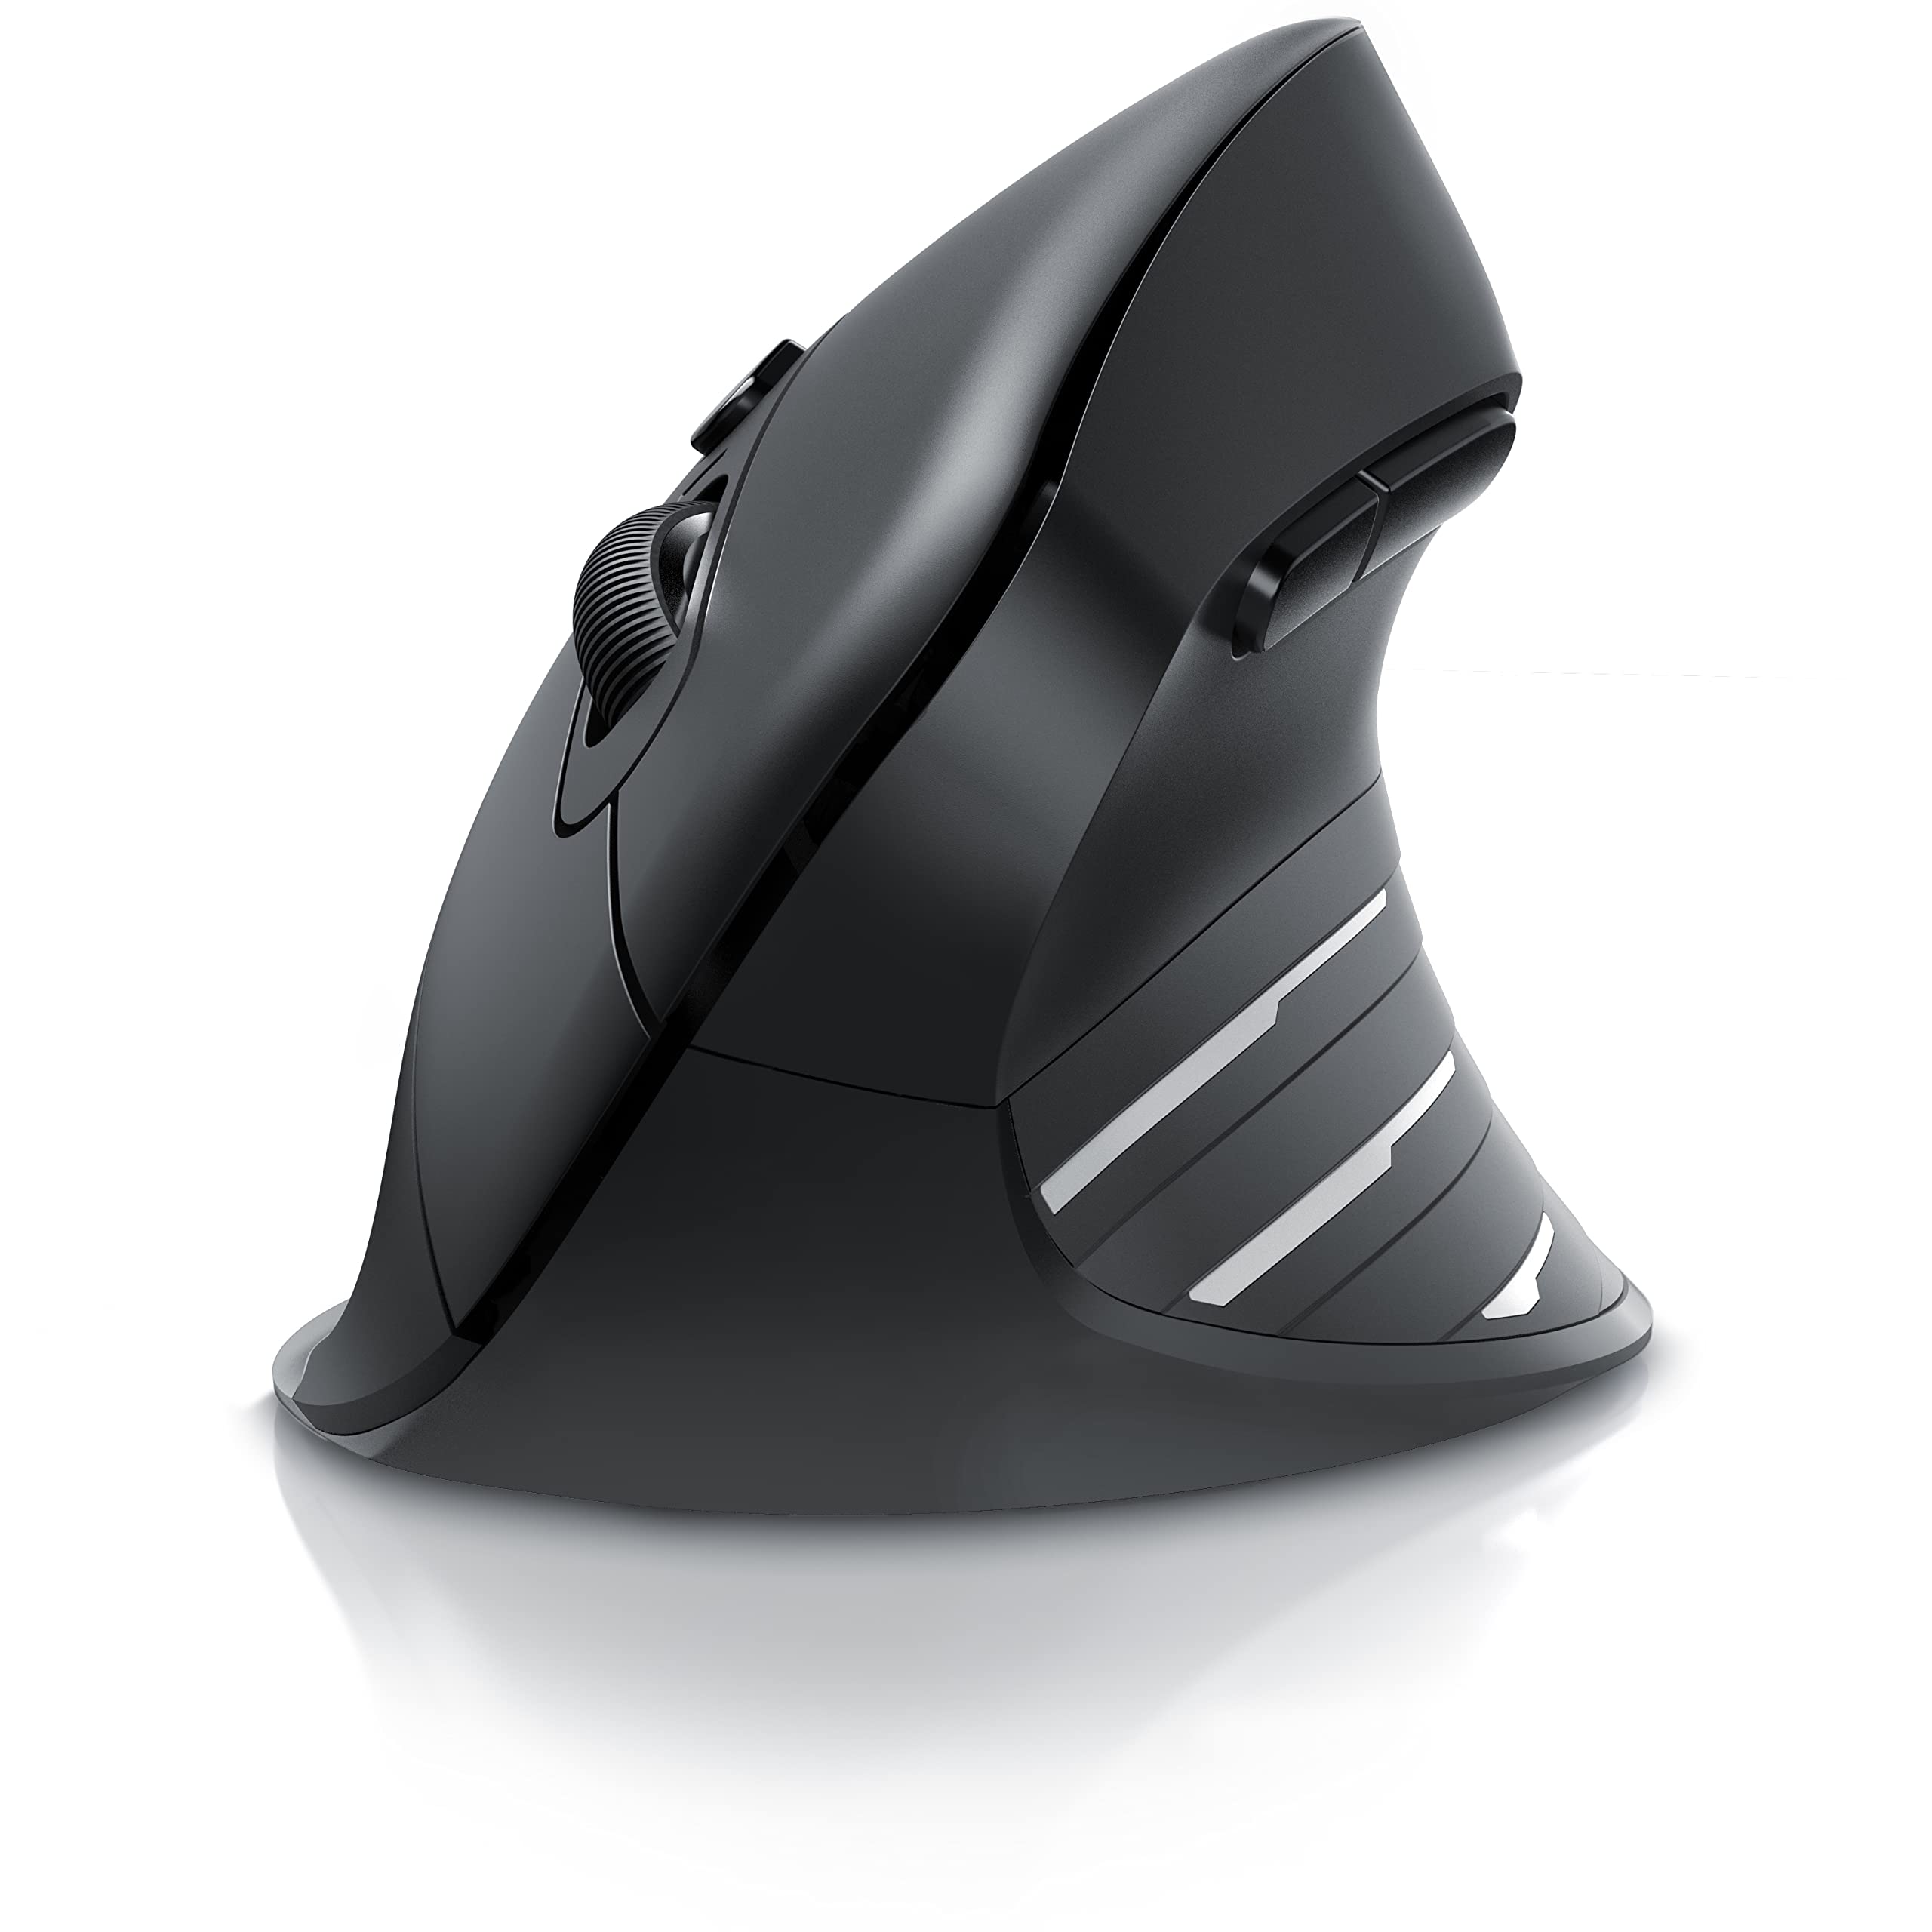 CSL - kabellose Maus Vertikal Bluetooth + Funk 2.4 GHz - Neues Modell - USB Vertical Mouse – ergonomisches Design - Vorbeugung gegen Mausarm - Wireless Funkmaus 2,4 GHz mit 1000-2400 DPI - PC und MAC